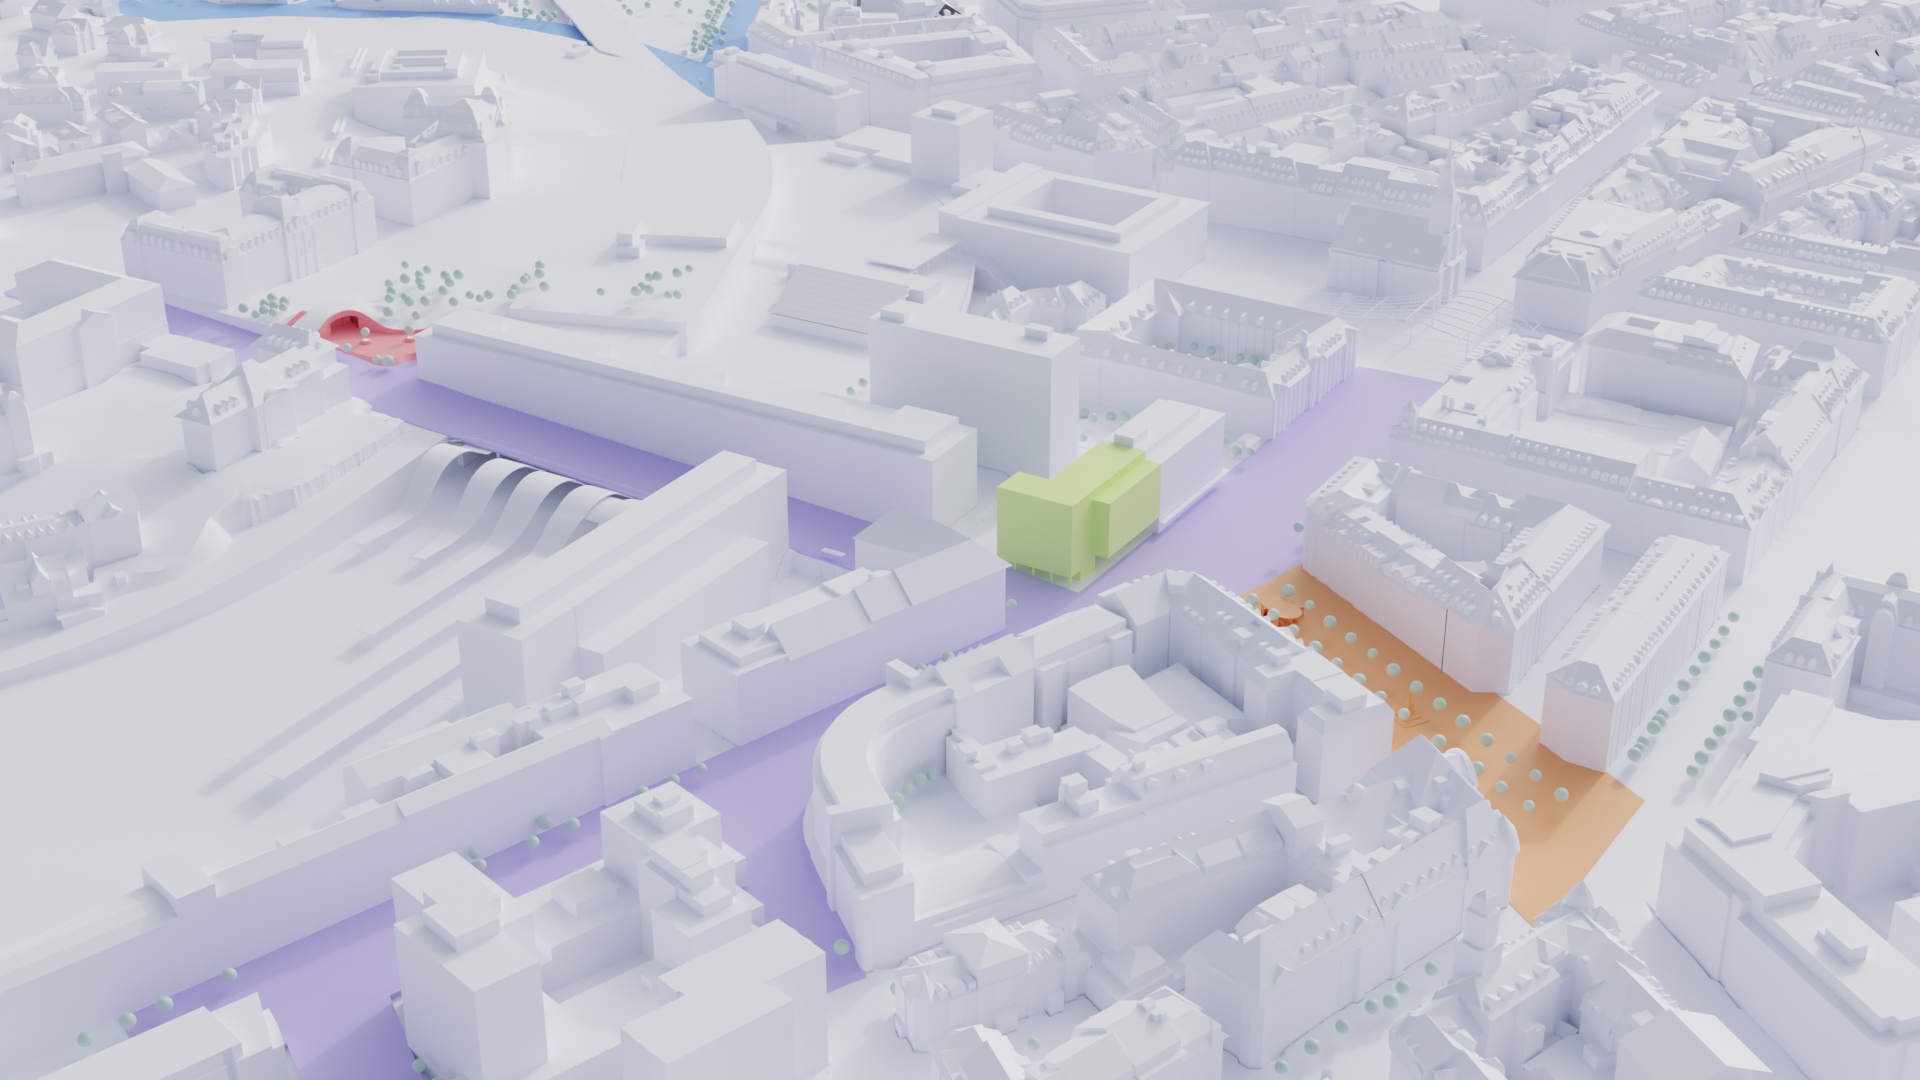 3D-Modell der Umgebung des Bahnhof Berns mit farblicher Markierung der Bauprojekte.